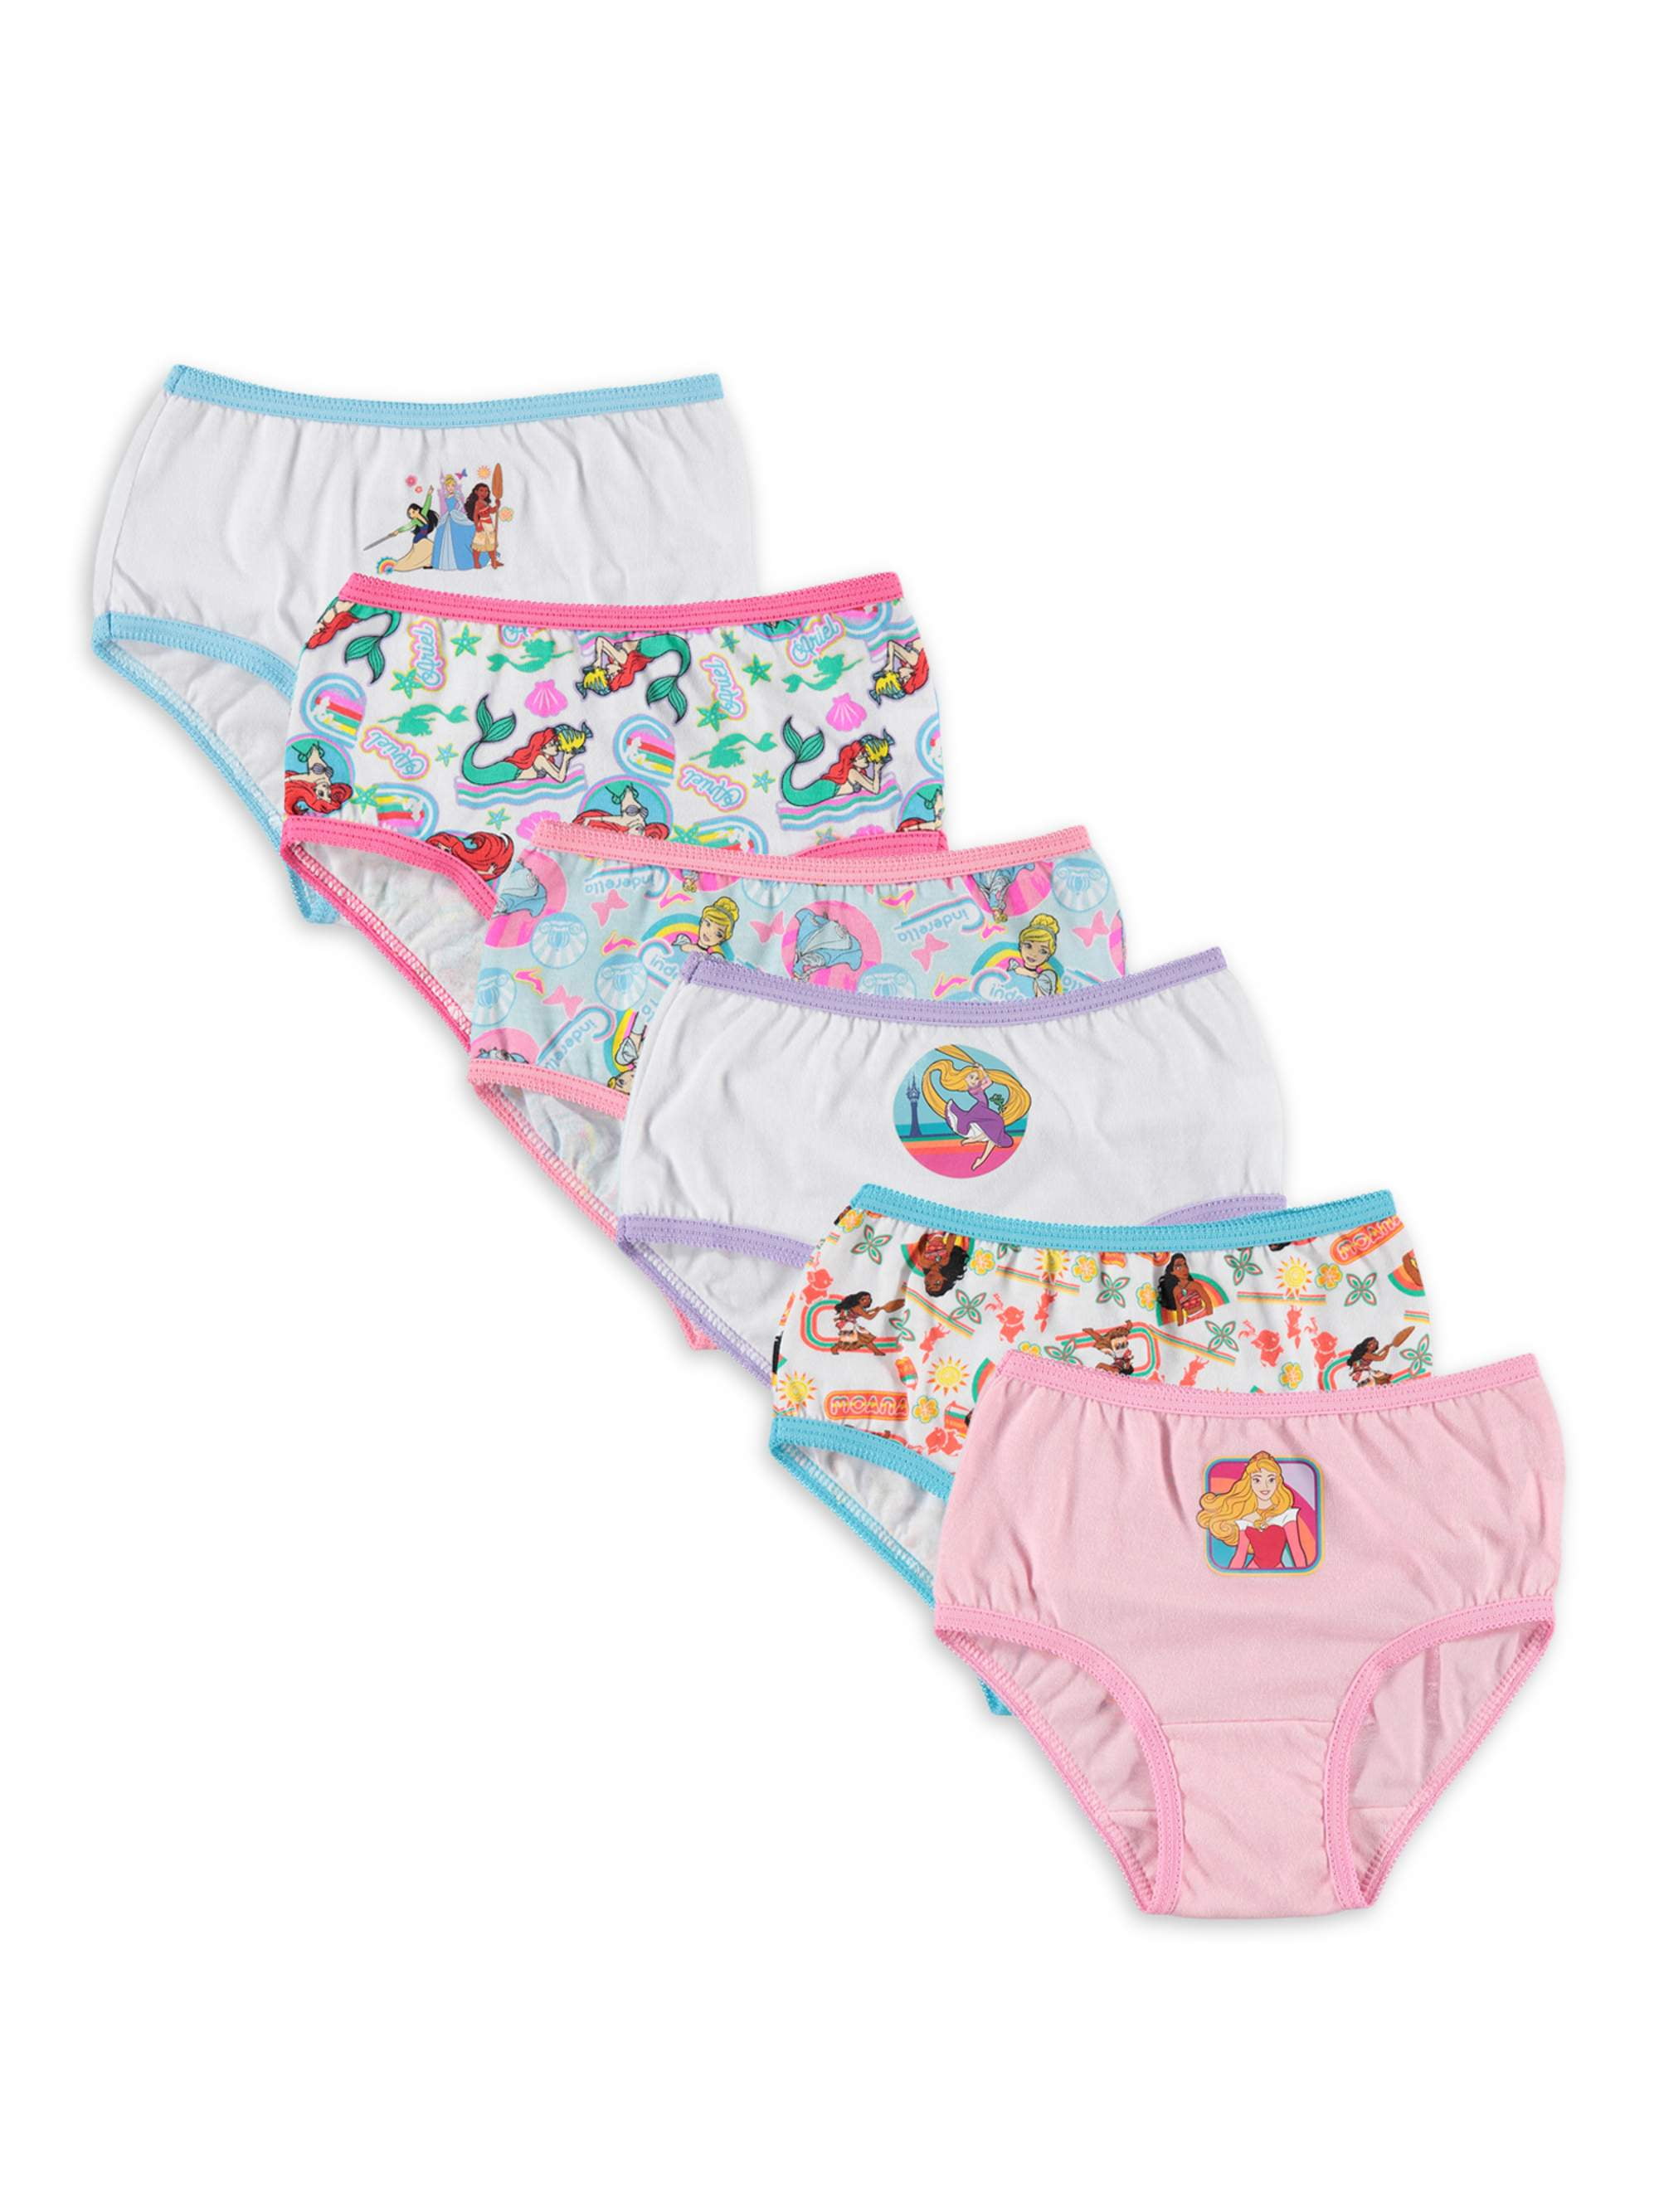 Buy APEXAENTERPRISE Girl's Pincess Boyshort Panties Toddler